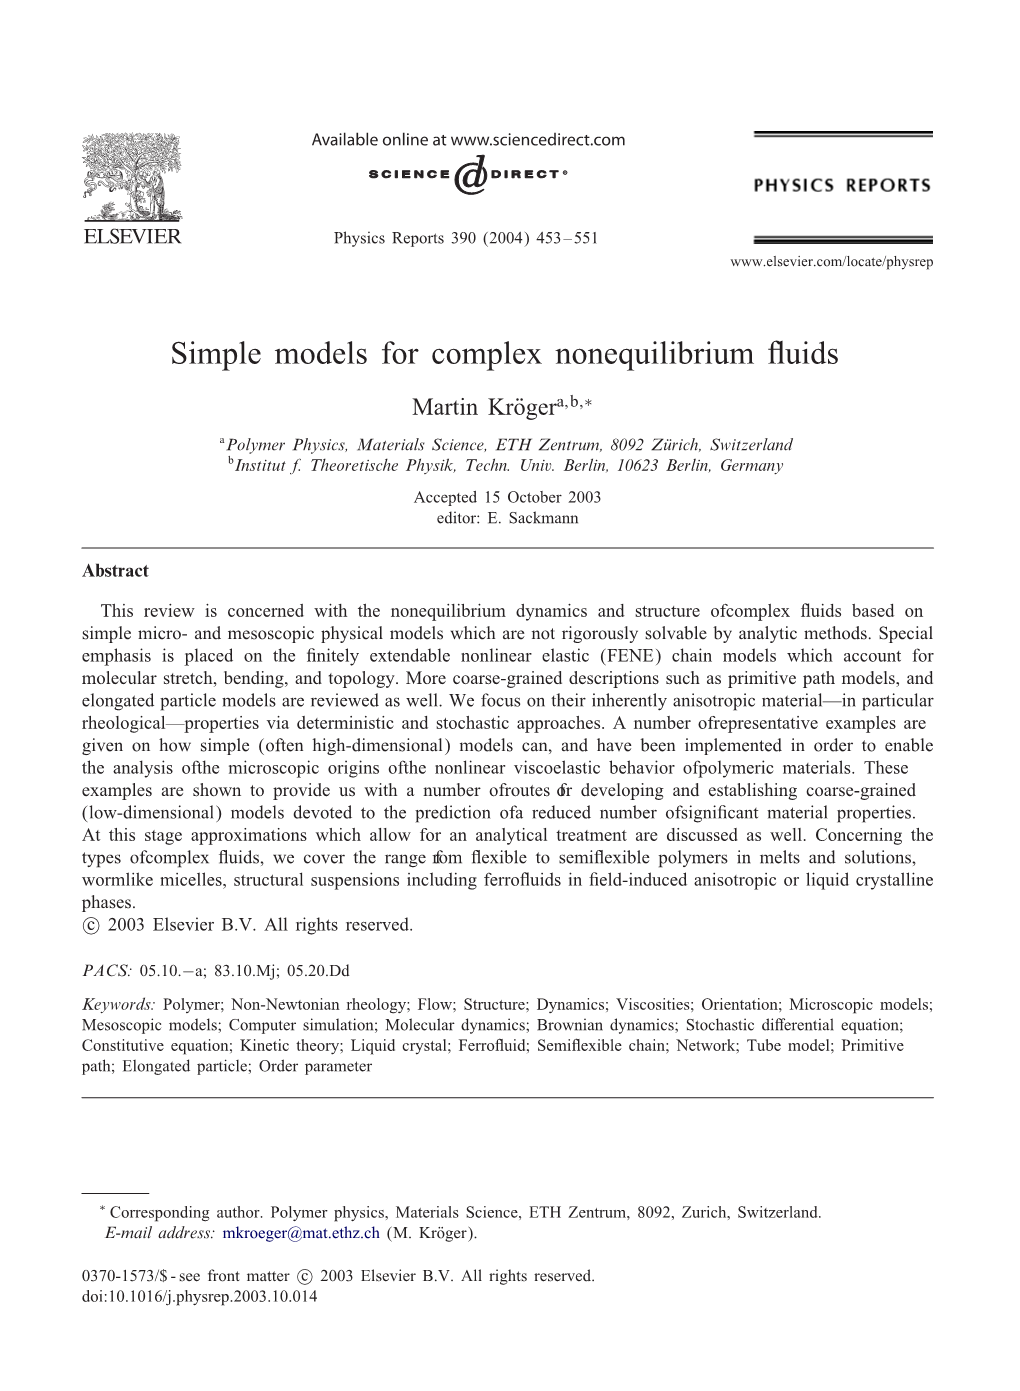 Simple Models for Complex Nonequilibrium Uids